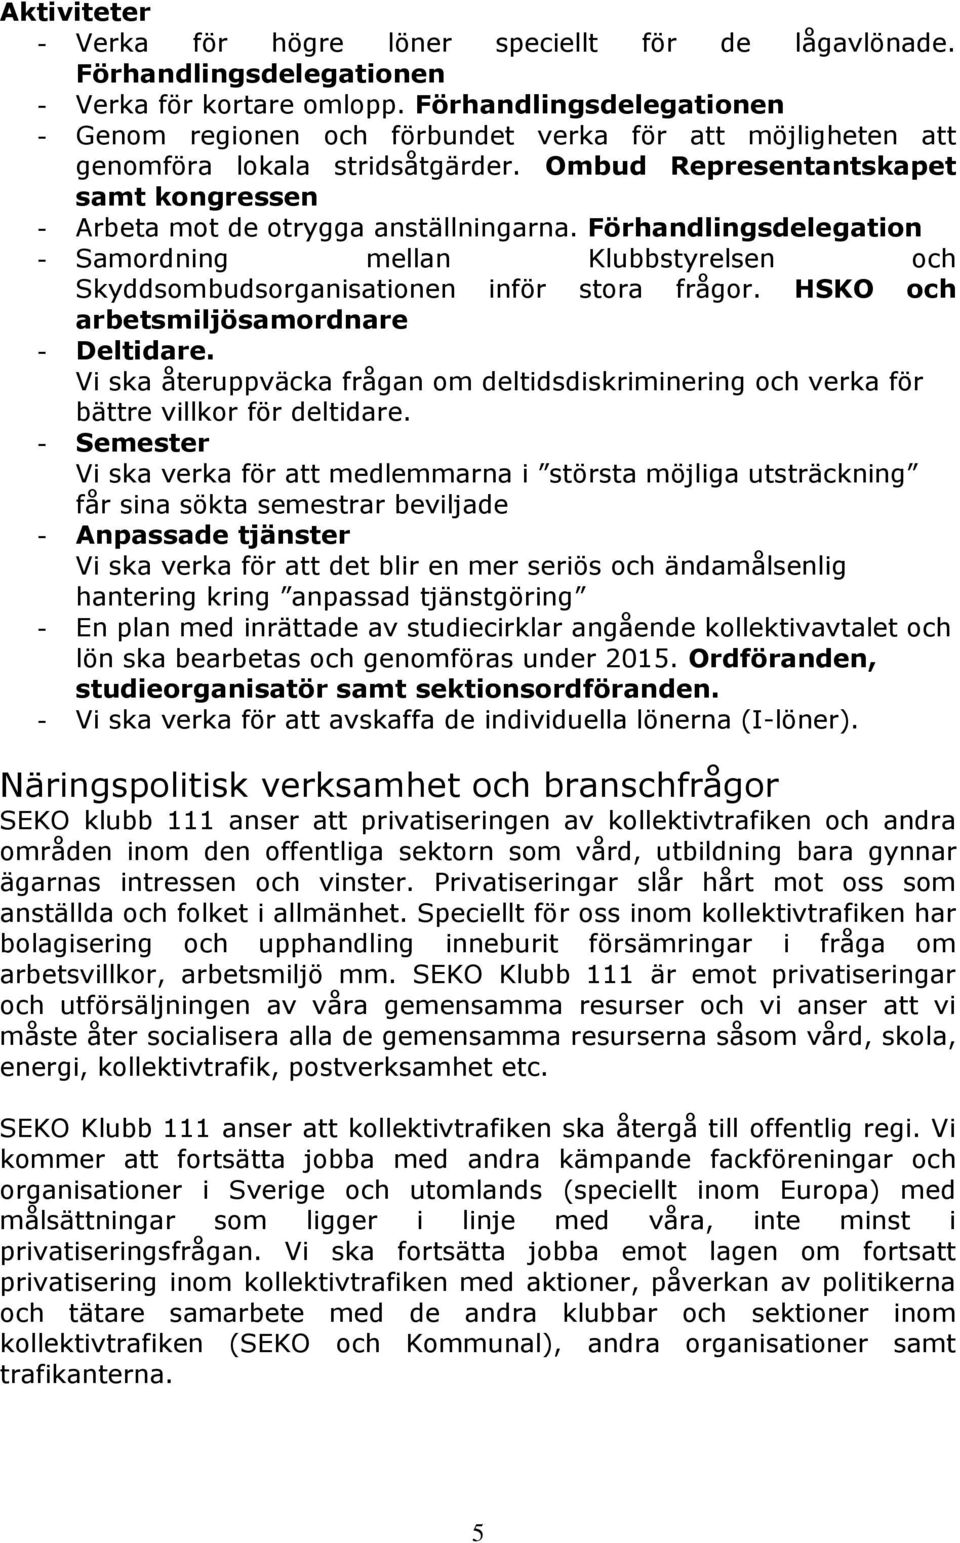 Förhandlingsdelegation - Samordning mellan Klubbstyrelsen och Skyddsombudsorganisationen inför stora frågor. HSKO och arbetsmiljösamordnare - Deltidare.